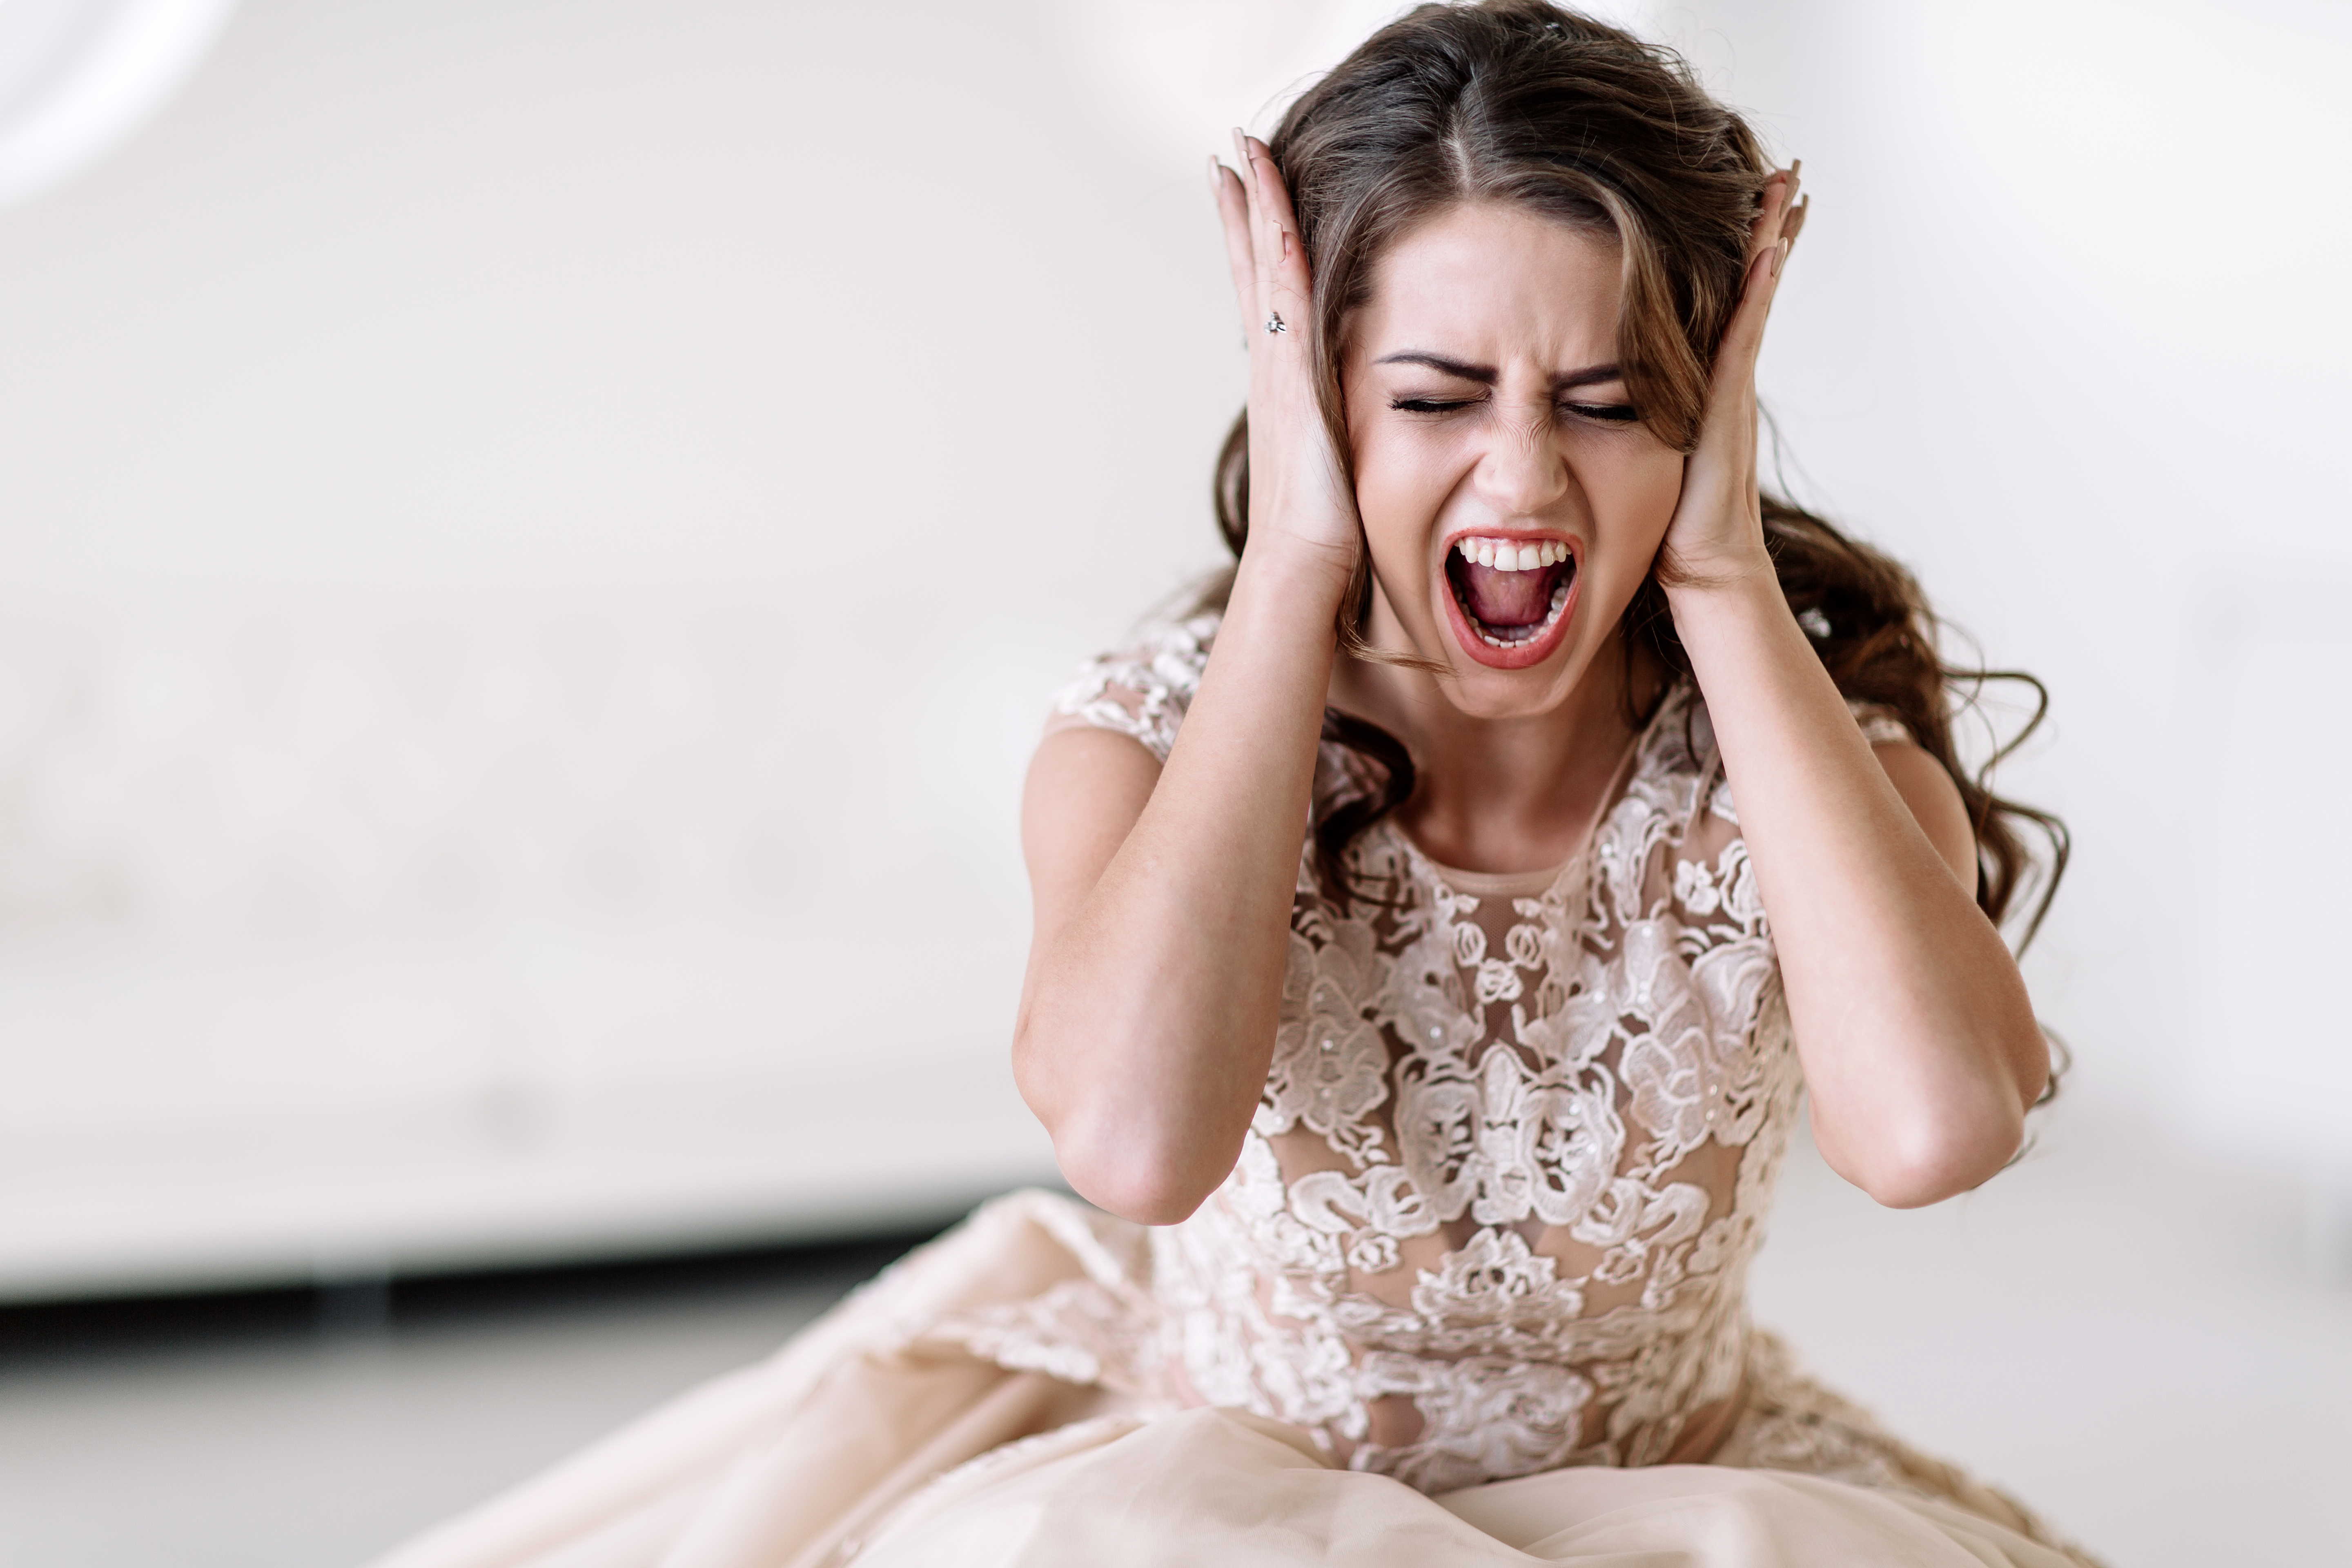 Una novia gritando sentada en el suelo | Fuente: Shutterstock